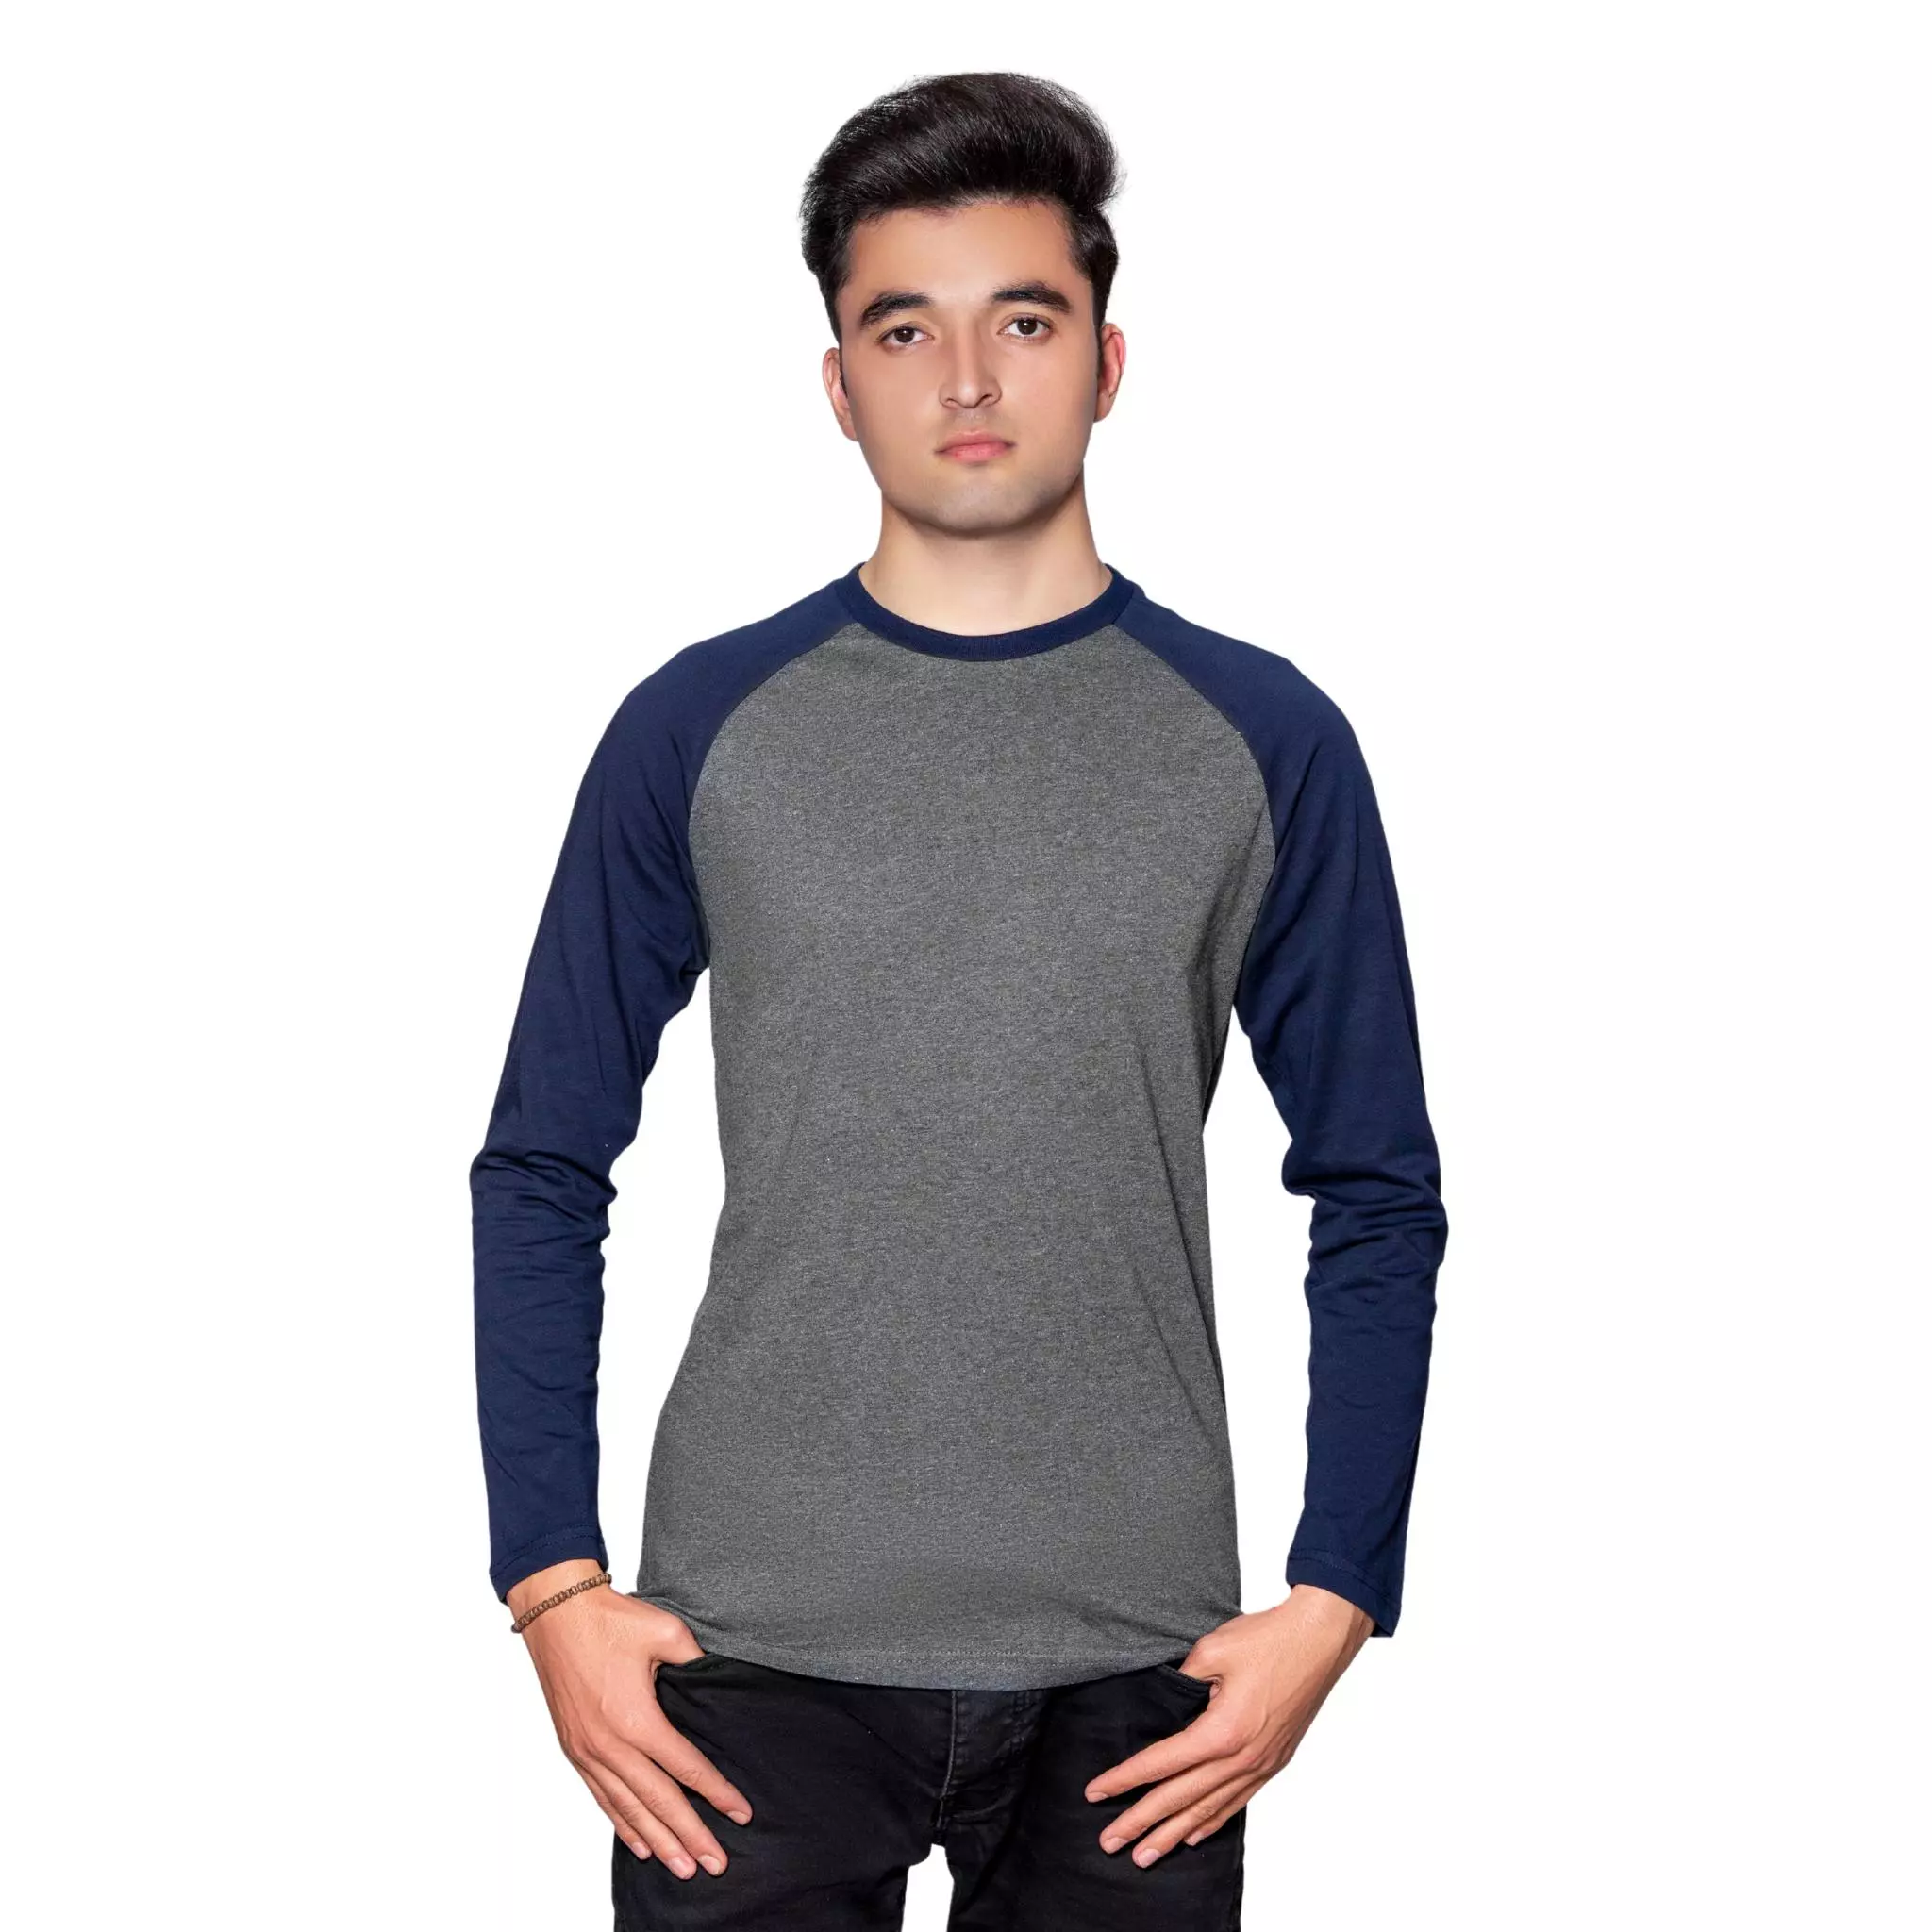 grey and navy raglan t-shirt for men 2 - brocode